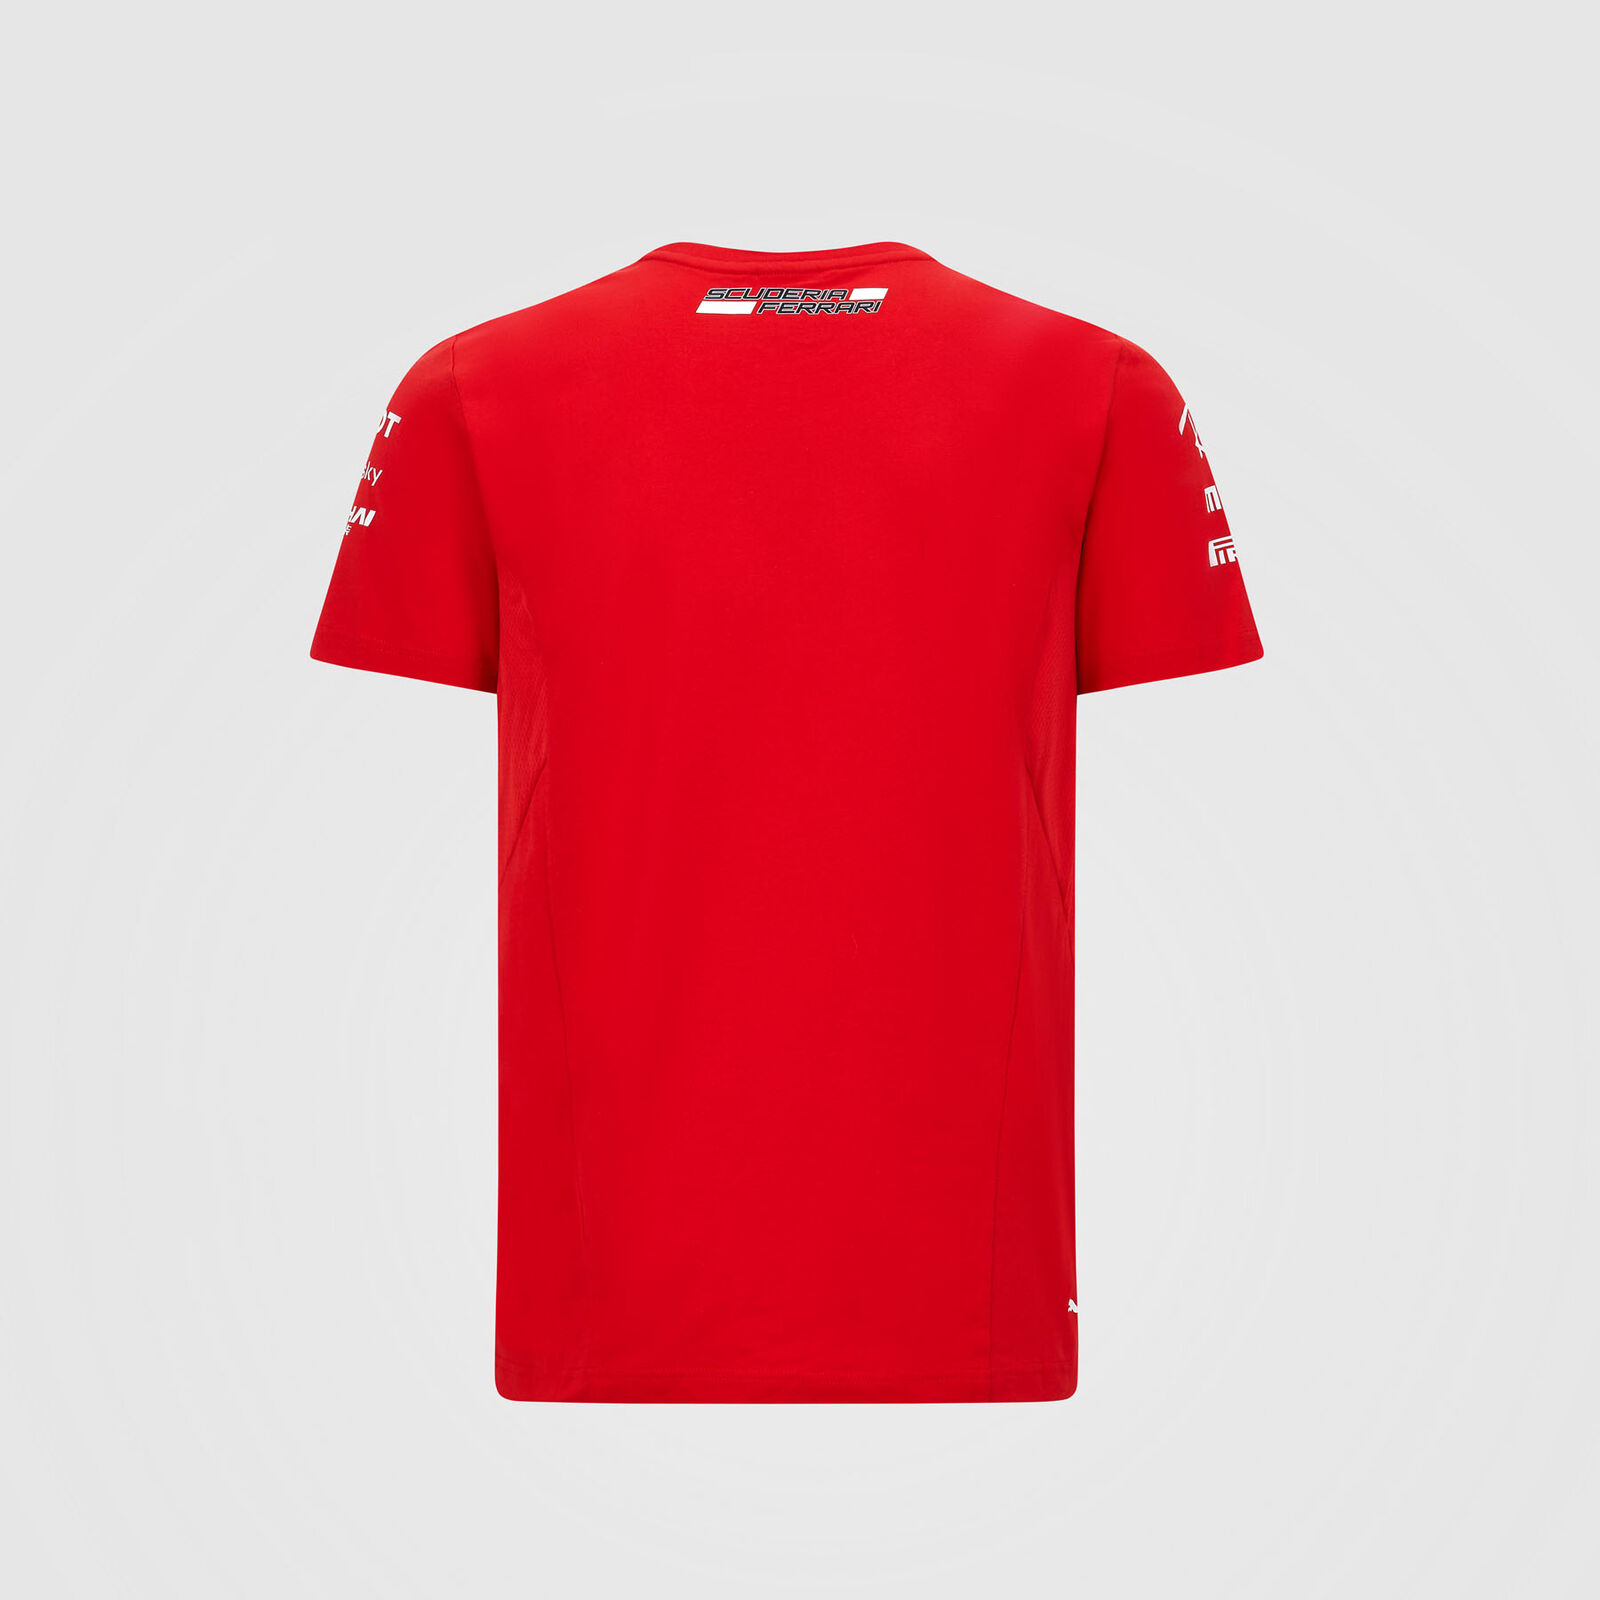 FERRARI Scuderia Womens T-shirt F1 Racing SF Team Red Official 